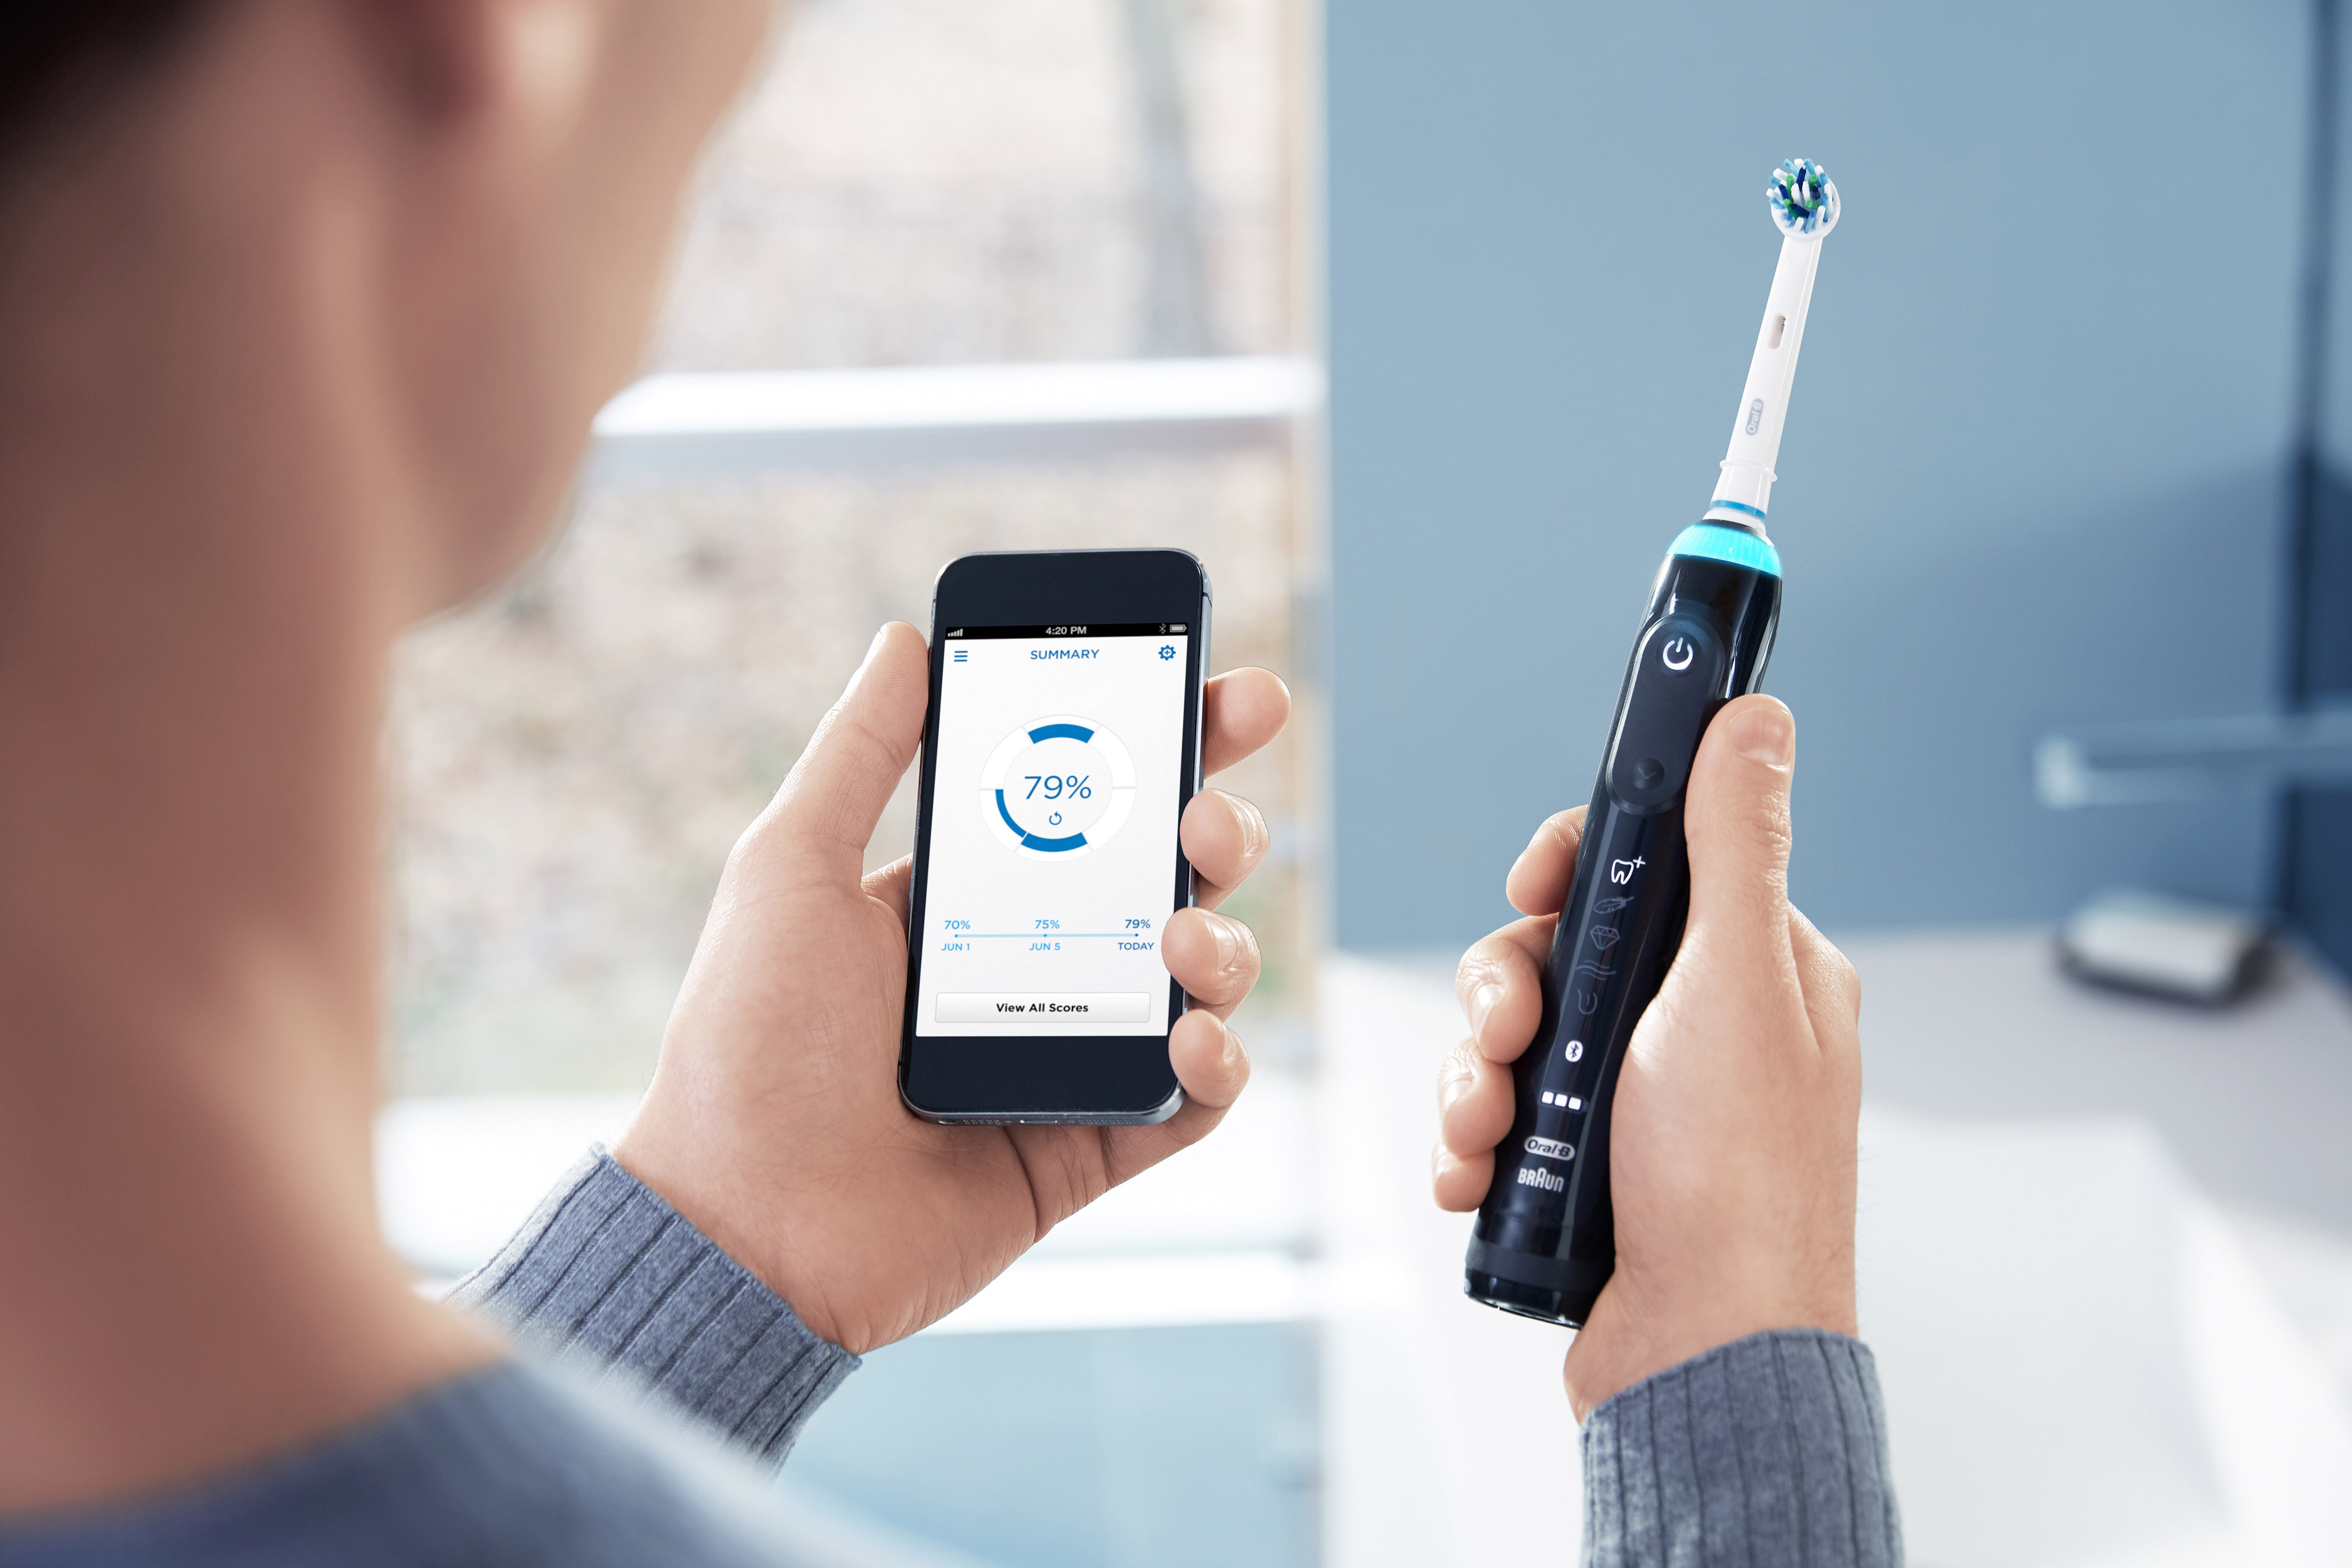 Oral-B “Genius” cepillado efectivo con ayuda de tu smartphone #MWC16